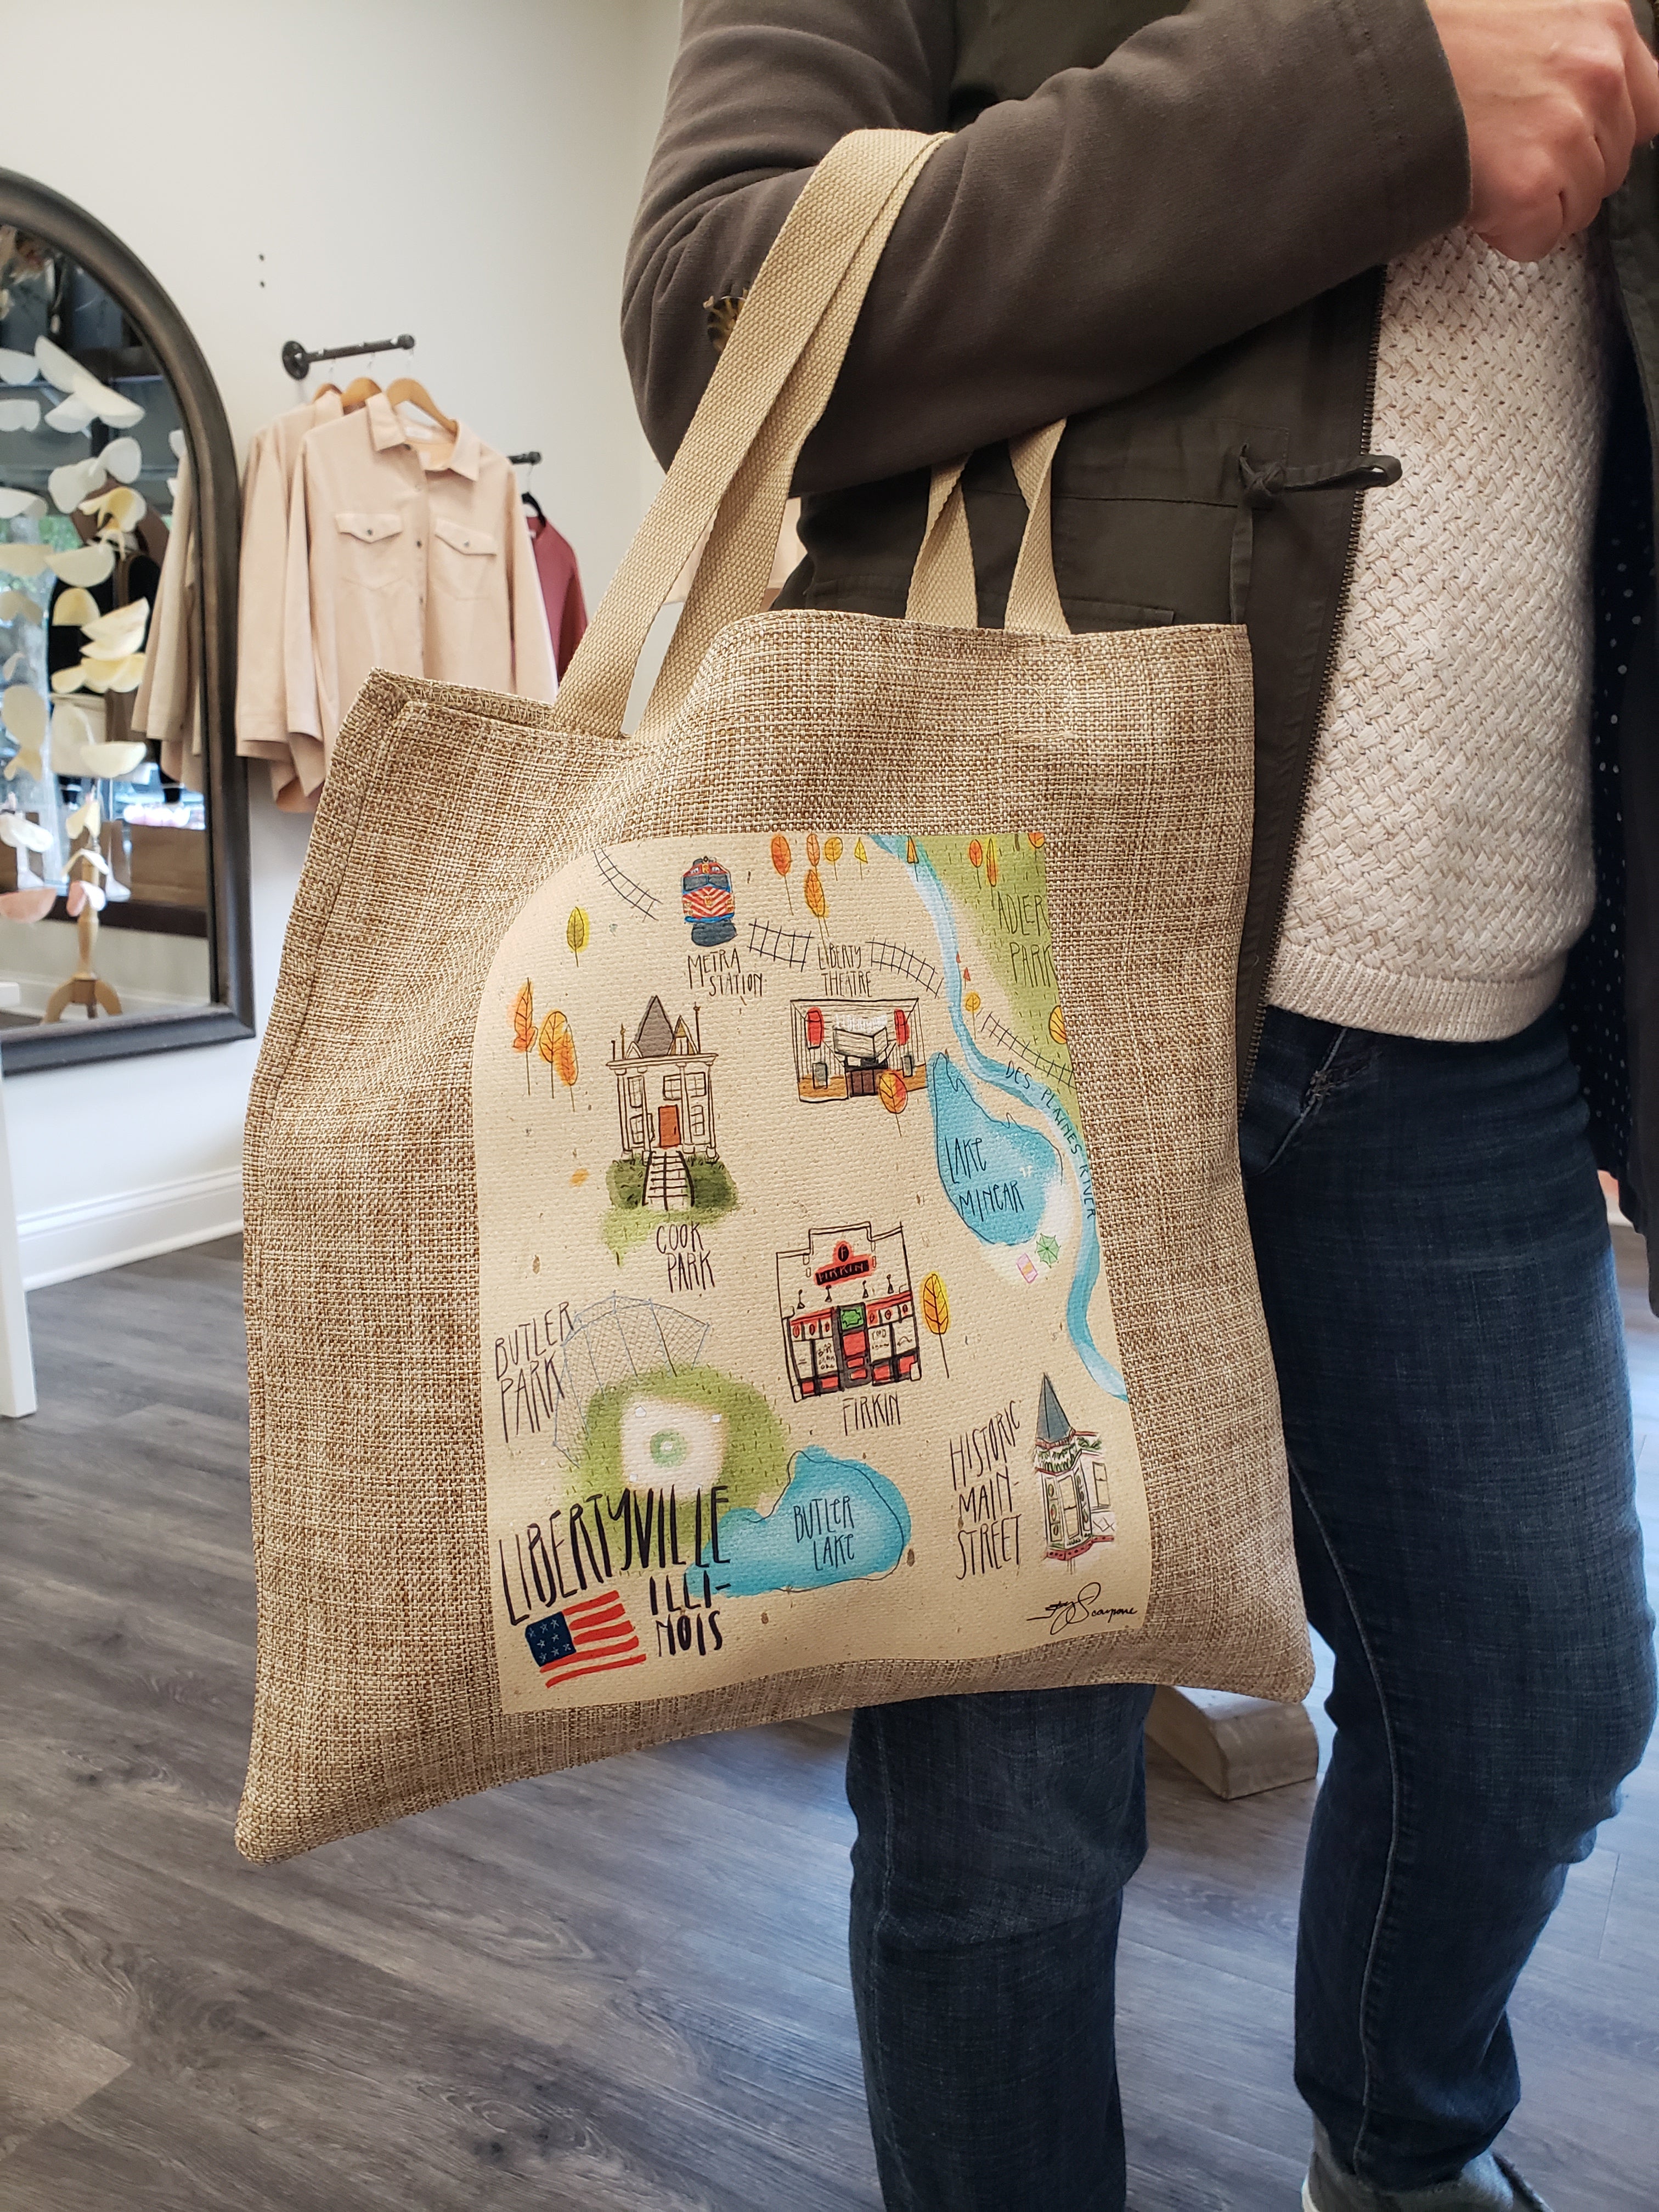 Libertyville Map Reusable Shopping Bag